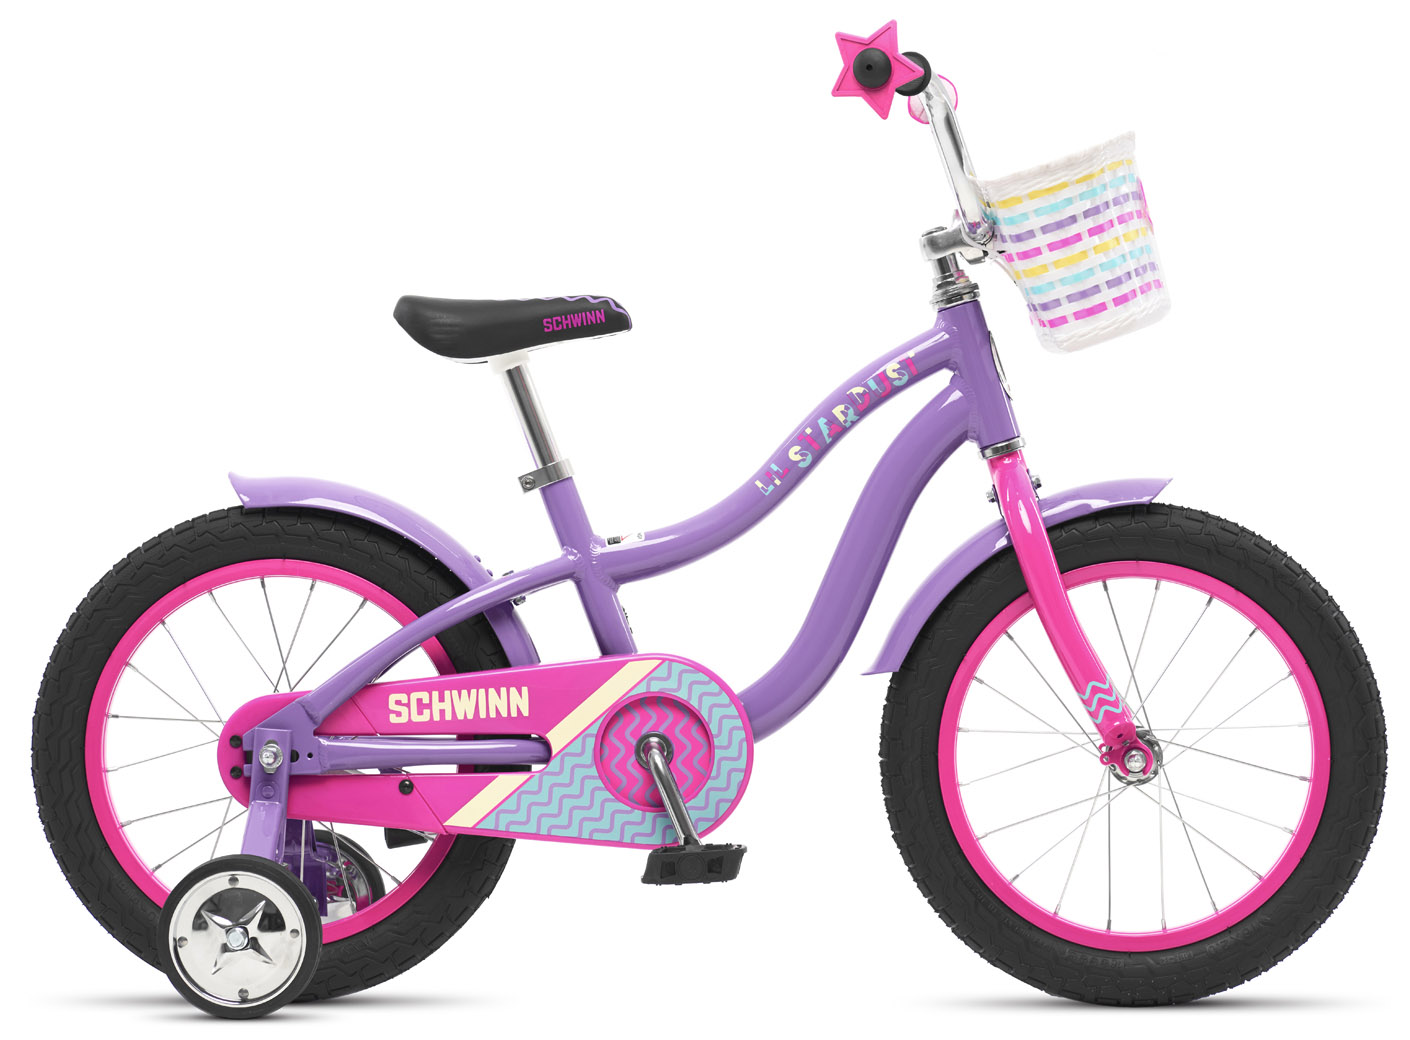  Отзывы о Детском велосипеде Schwinn Lil Stardust 2020